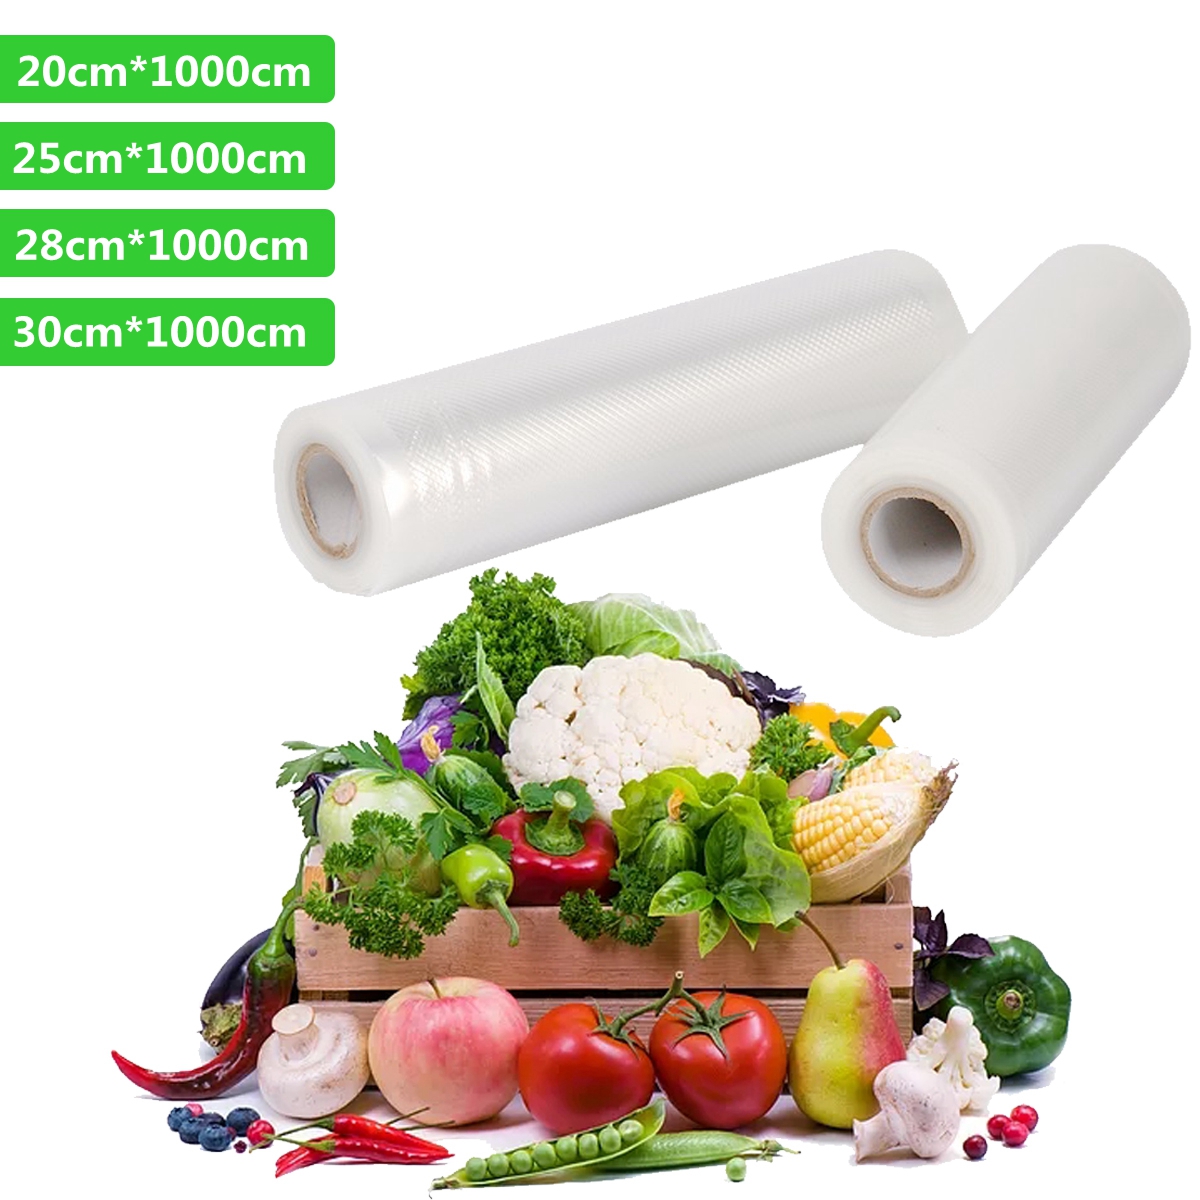 Vacuum-Sealer-Fruit-Vegetables-Bag-Fresh-Keeping-Food-Packing-Food-Storage-Home-1705840-7